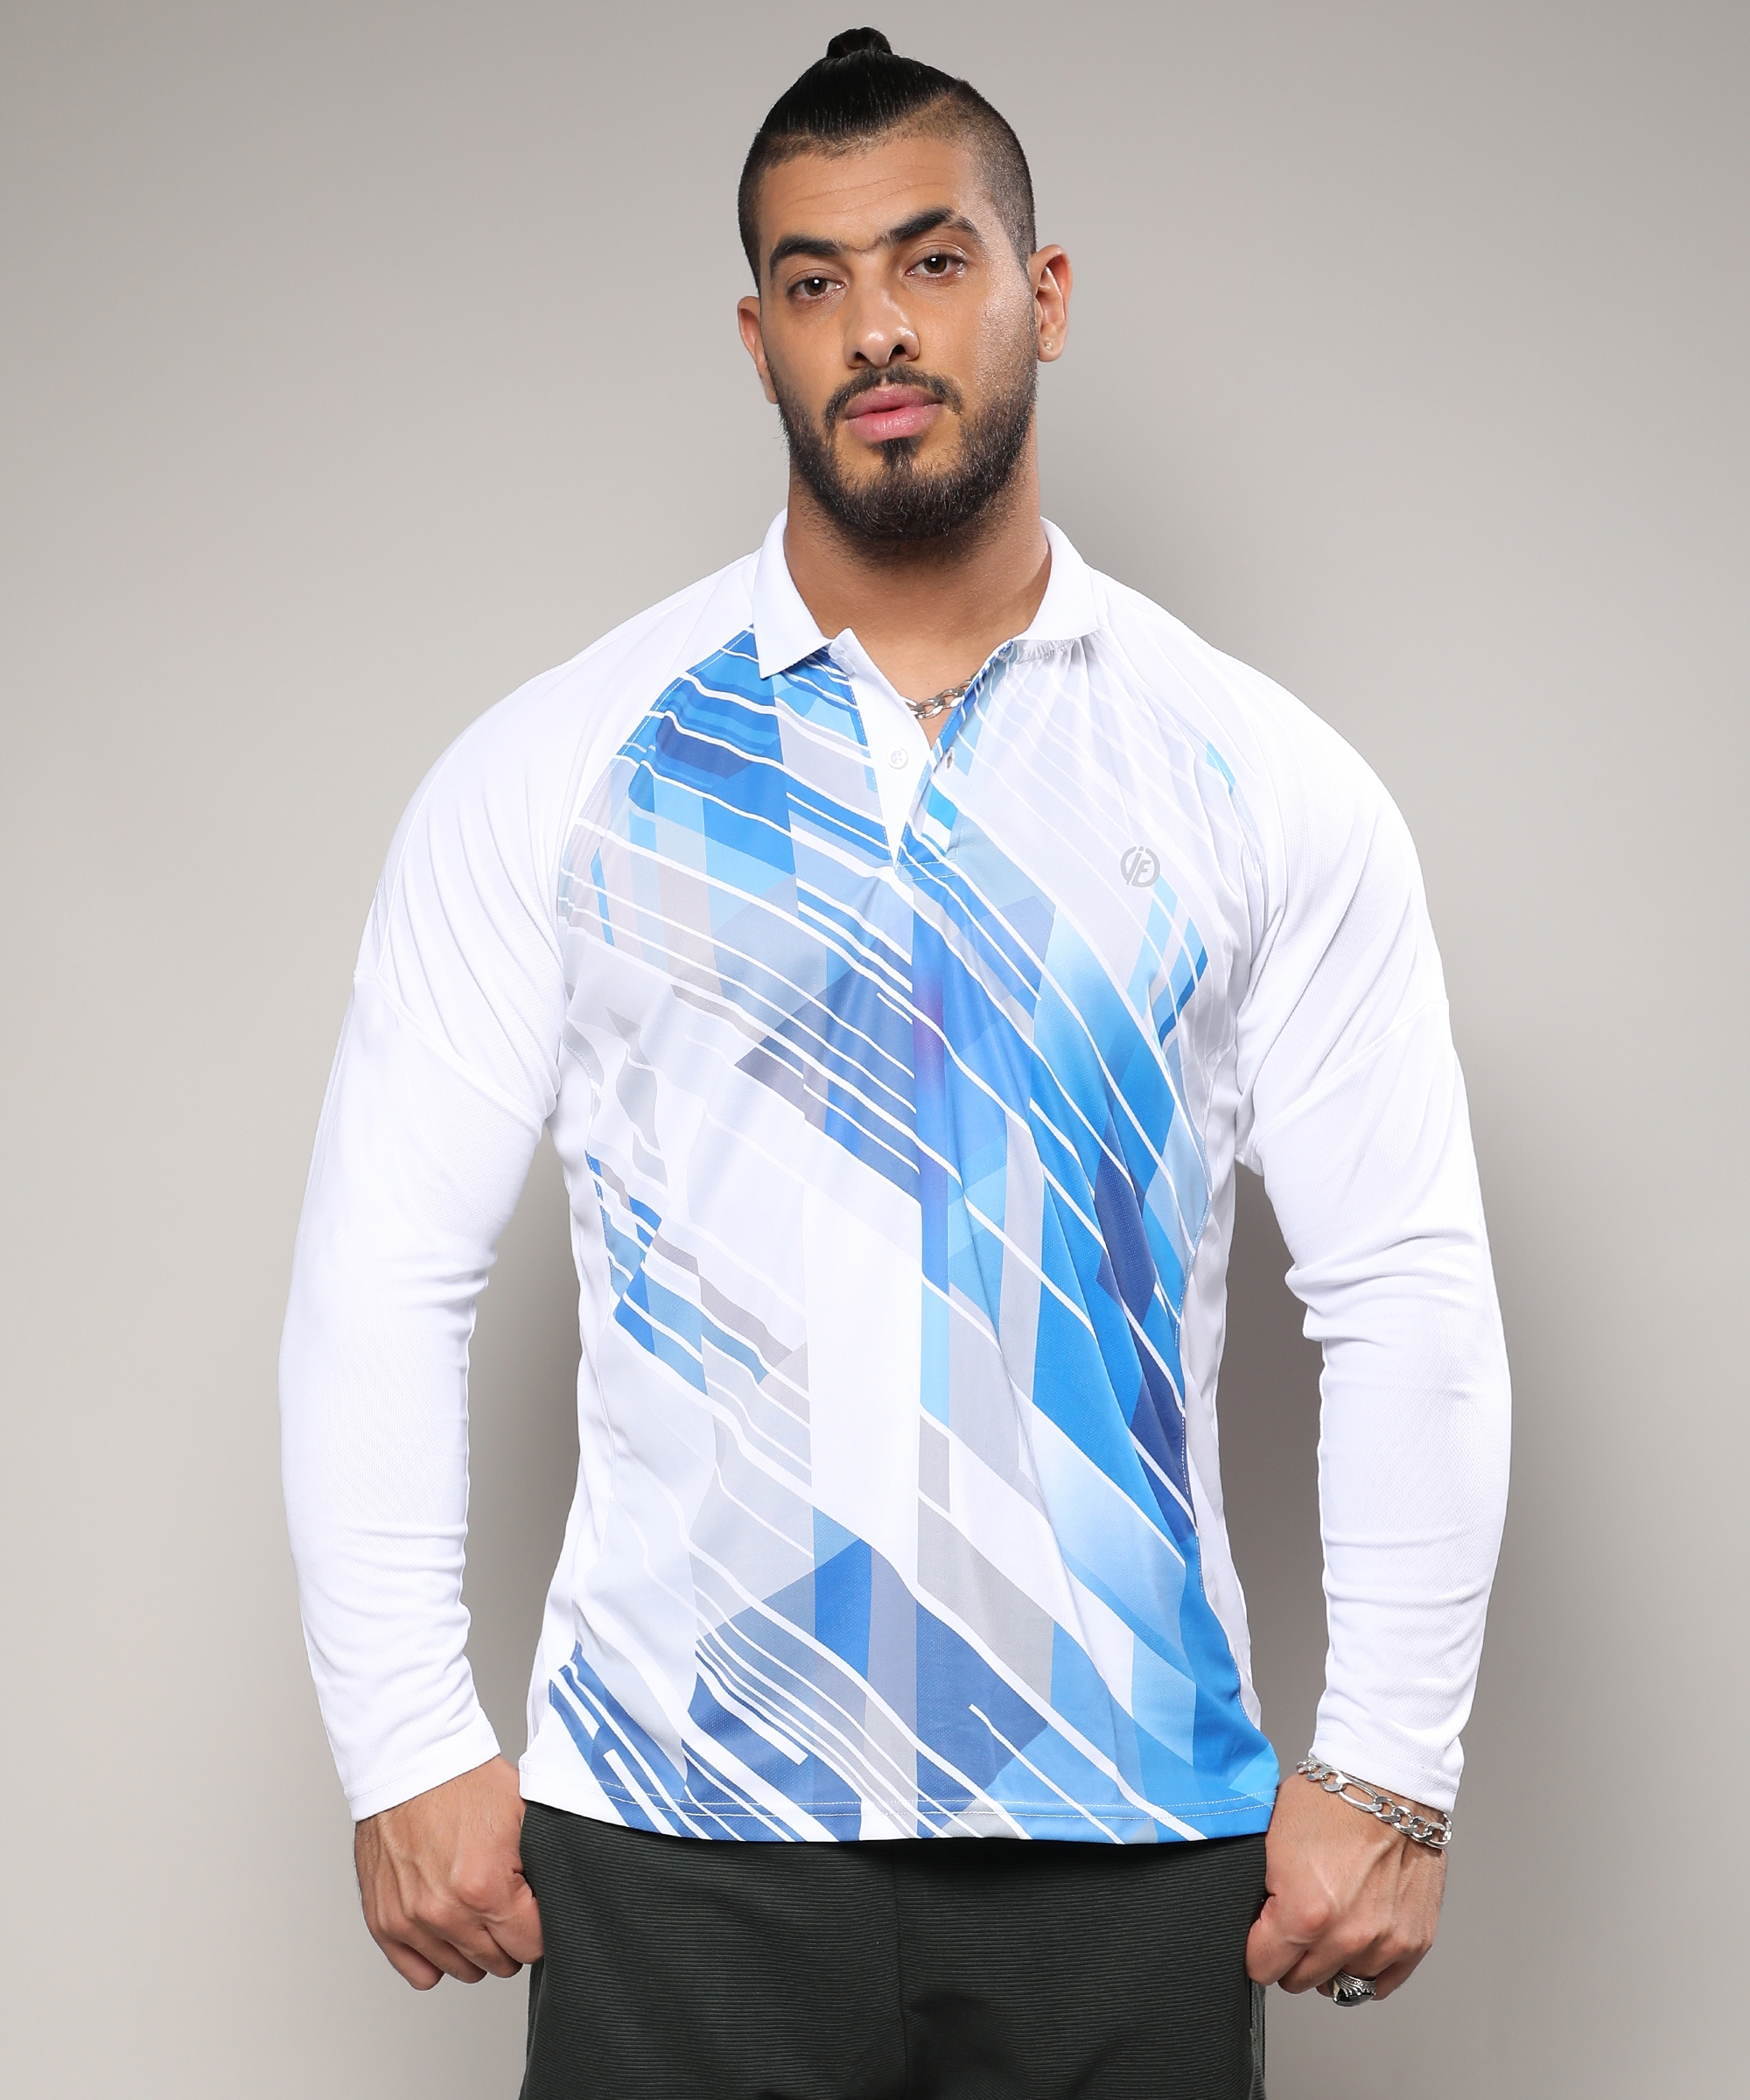 Instafab Plus | Men's White & Blue Contrast Print Activewear T-Shirt